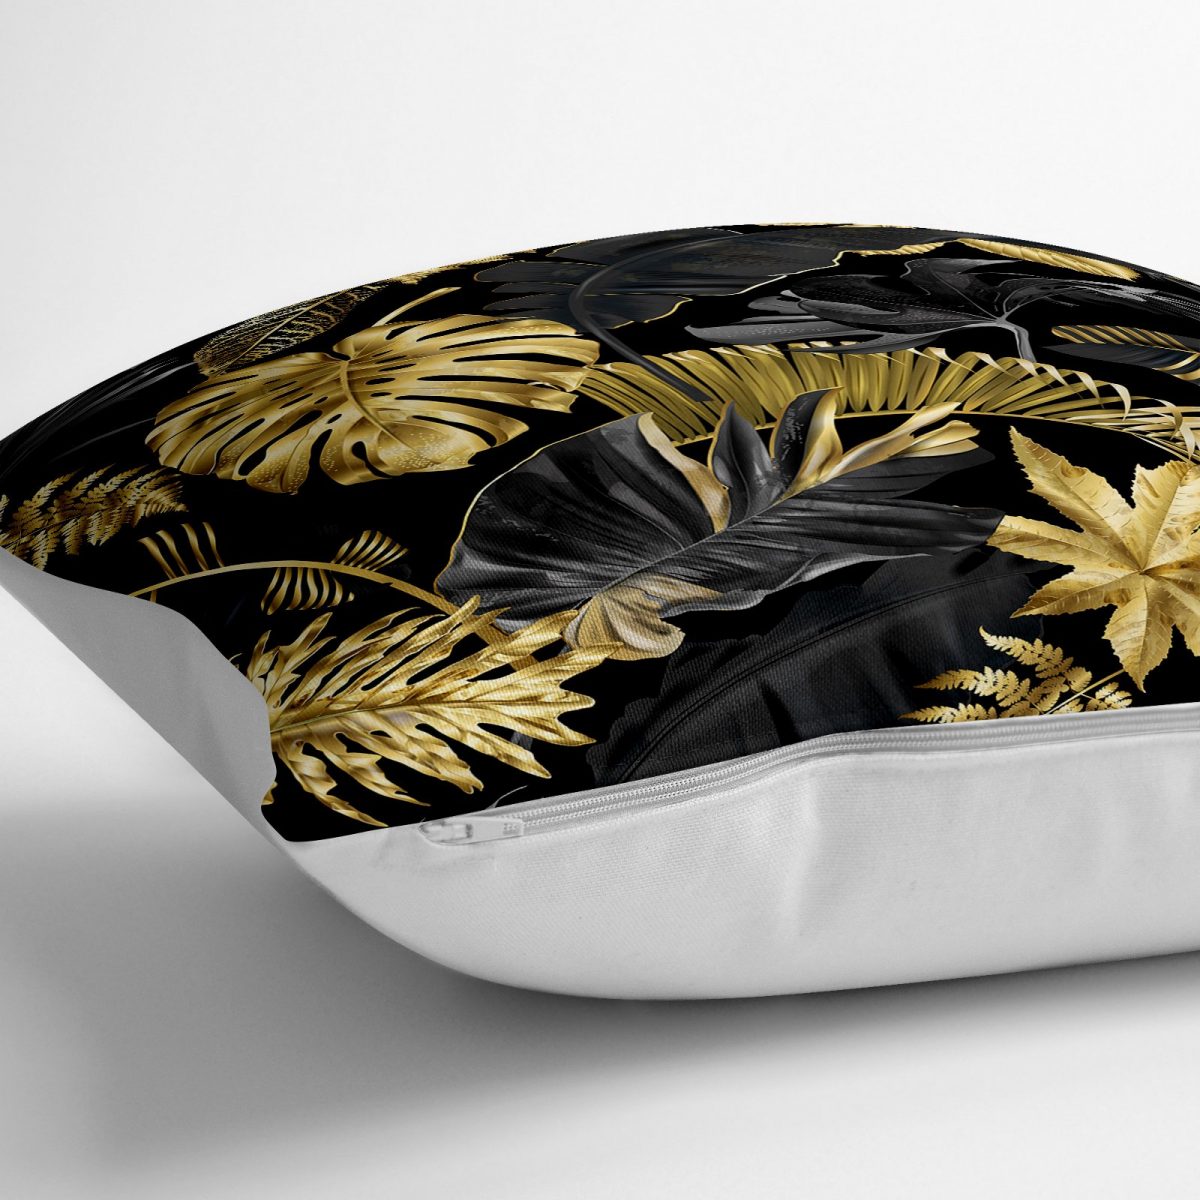 Siyah Zeminde Altın Yapraklar Desenli Dekoratif Yer Minderi - 70 x 70 cm Realhomes